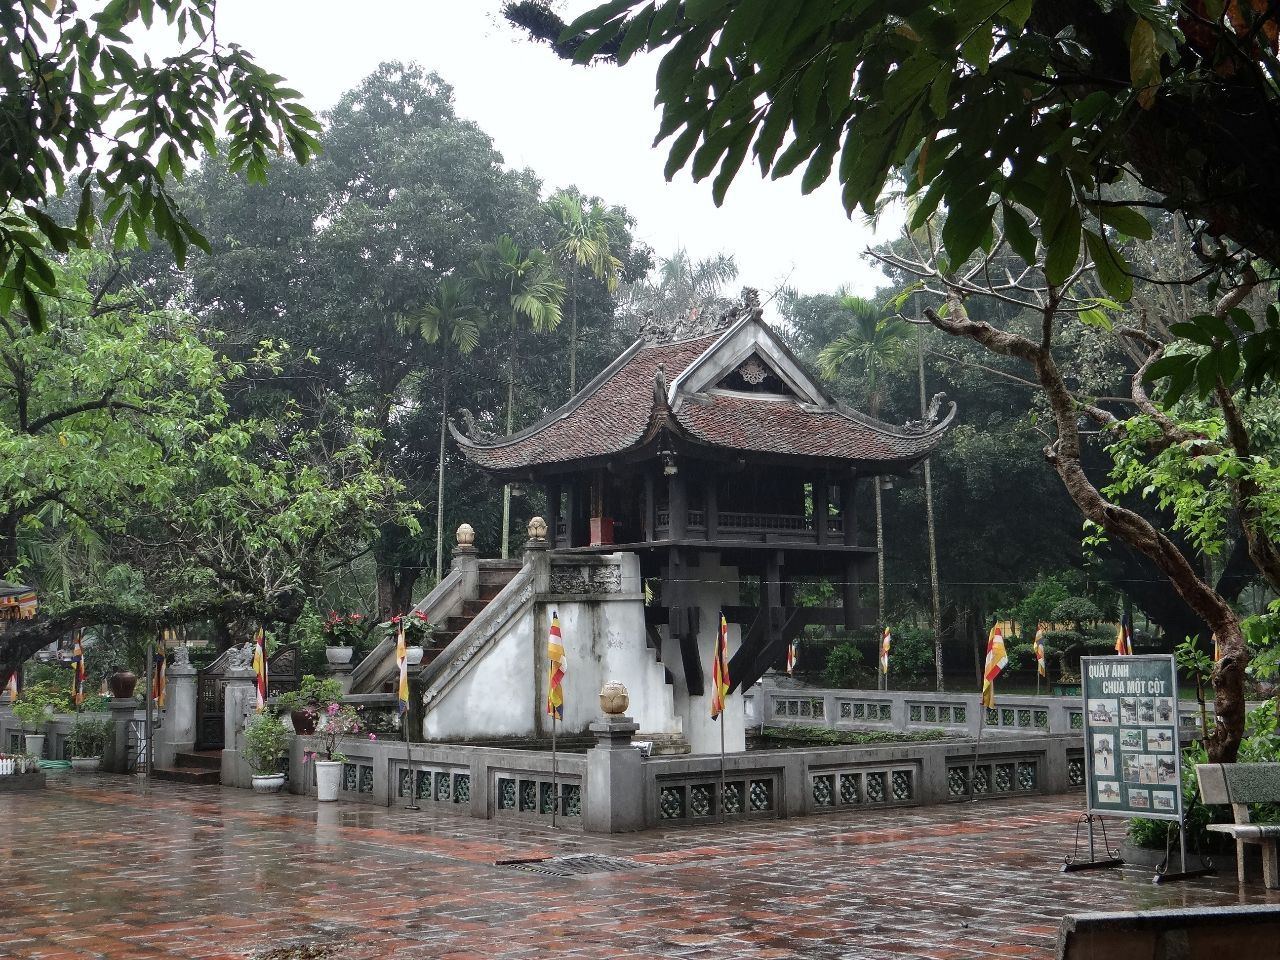 Буддийский Храм на одной свае, очень редкое архитектурное явление - Фотоотчет Вьетнам 2019. Часть 1 - день 1